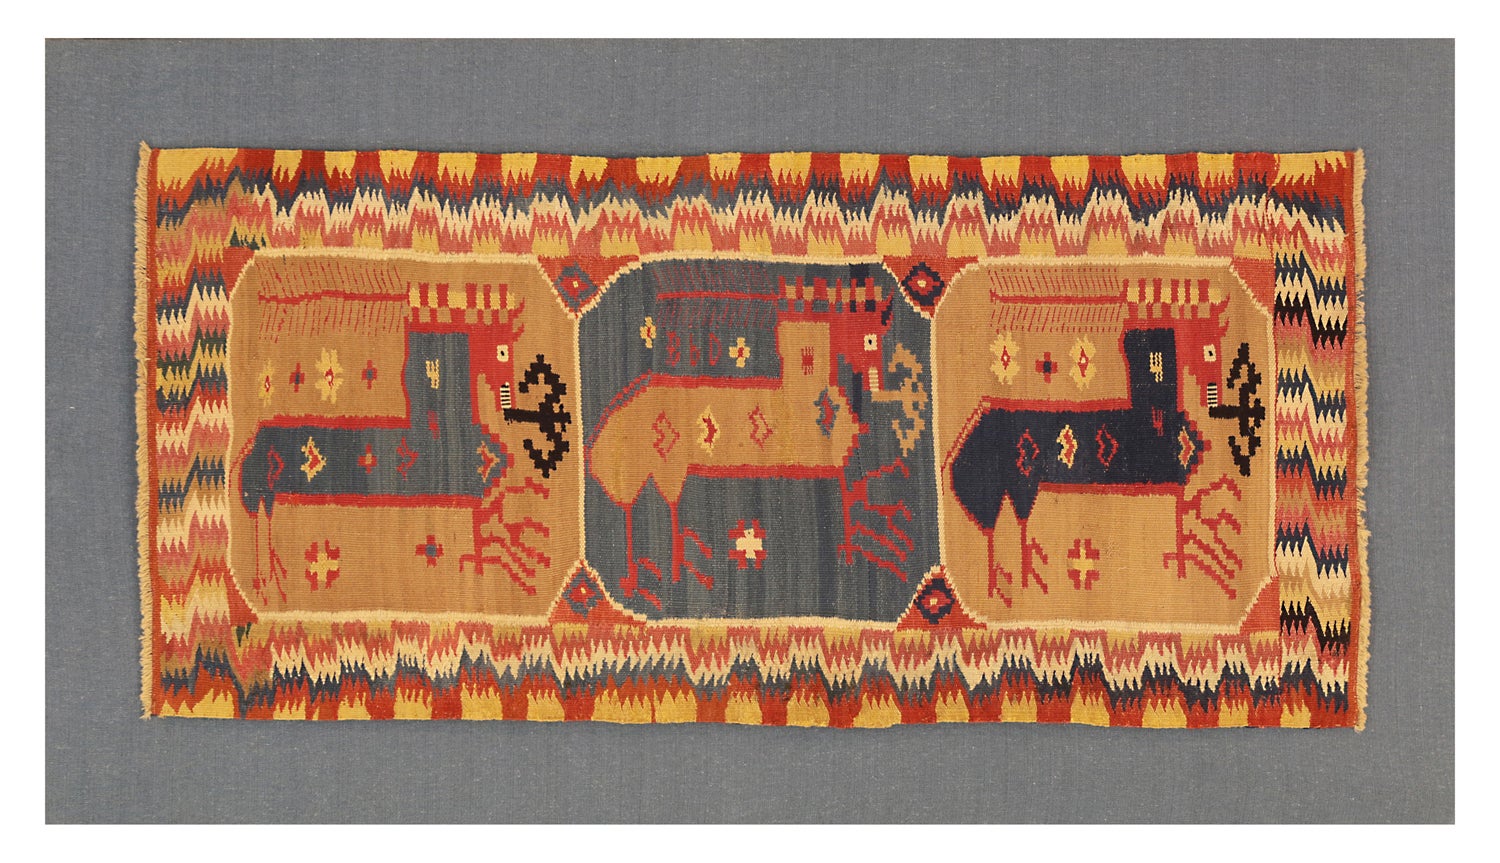 Antikes schwedisches Pferdedesign in Beige und Blau aus Textil, 19. Jahrhundert